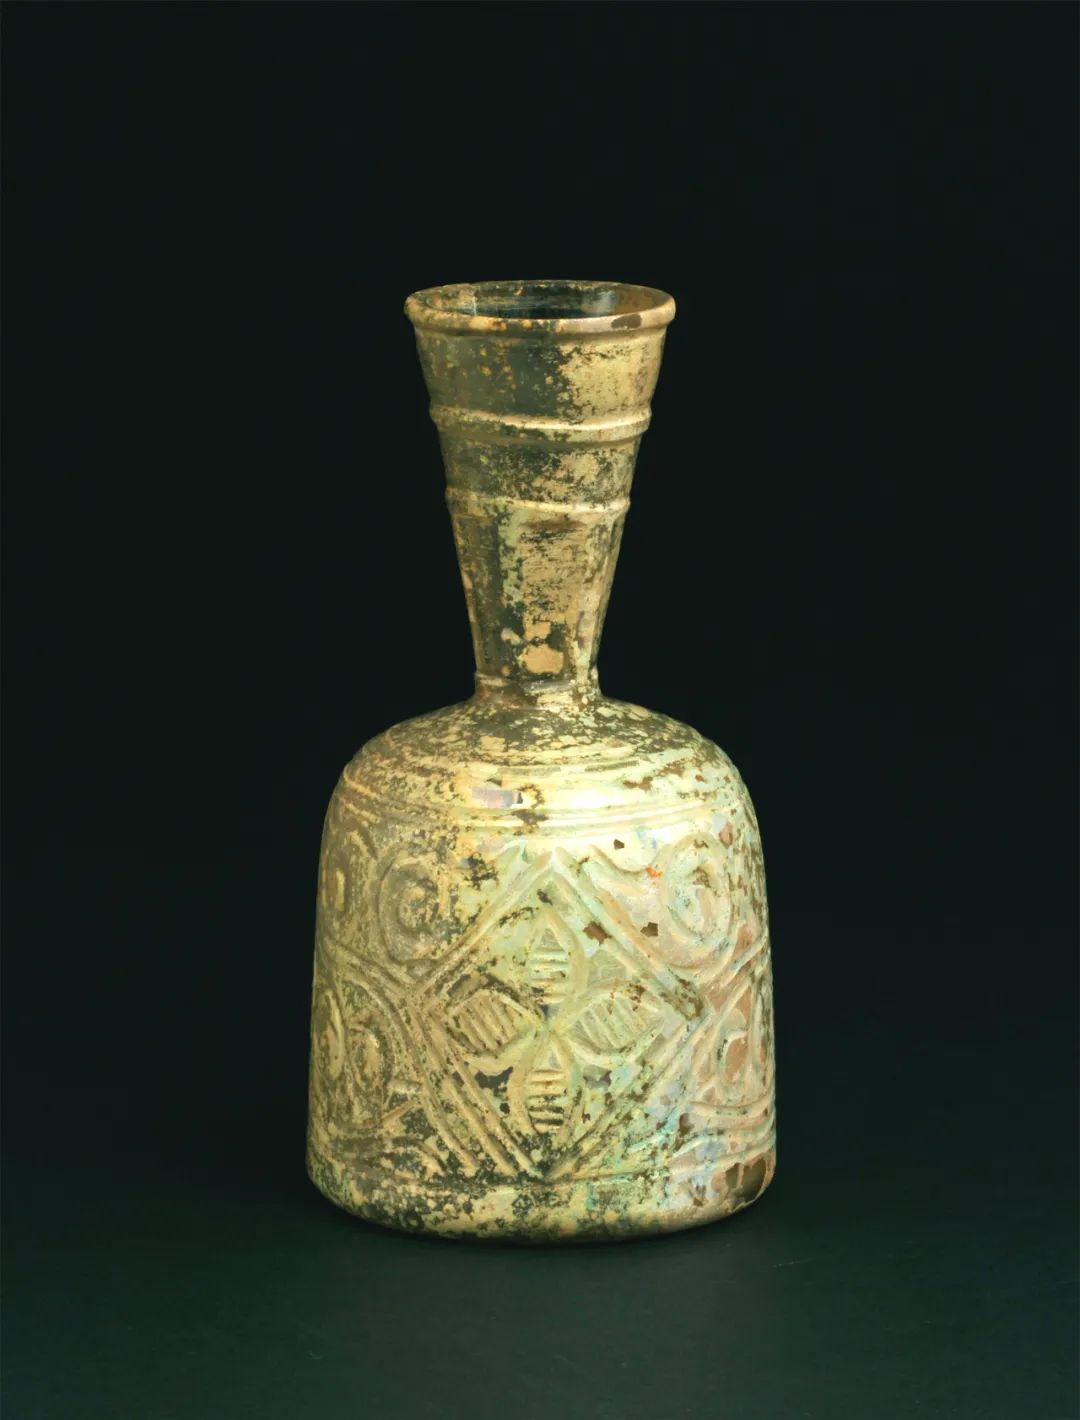 刻纹长颈瓶，伊朗，伊斯兰时期，公元9-10世纪